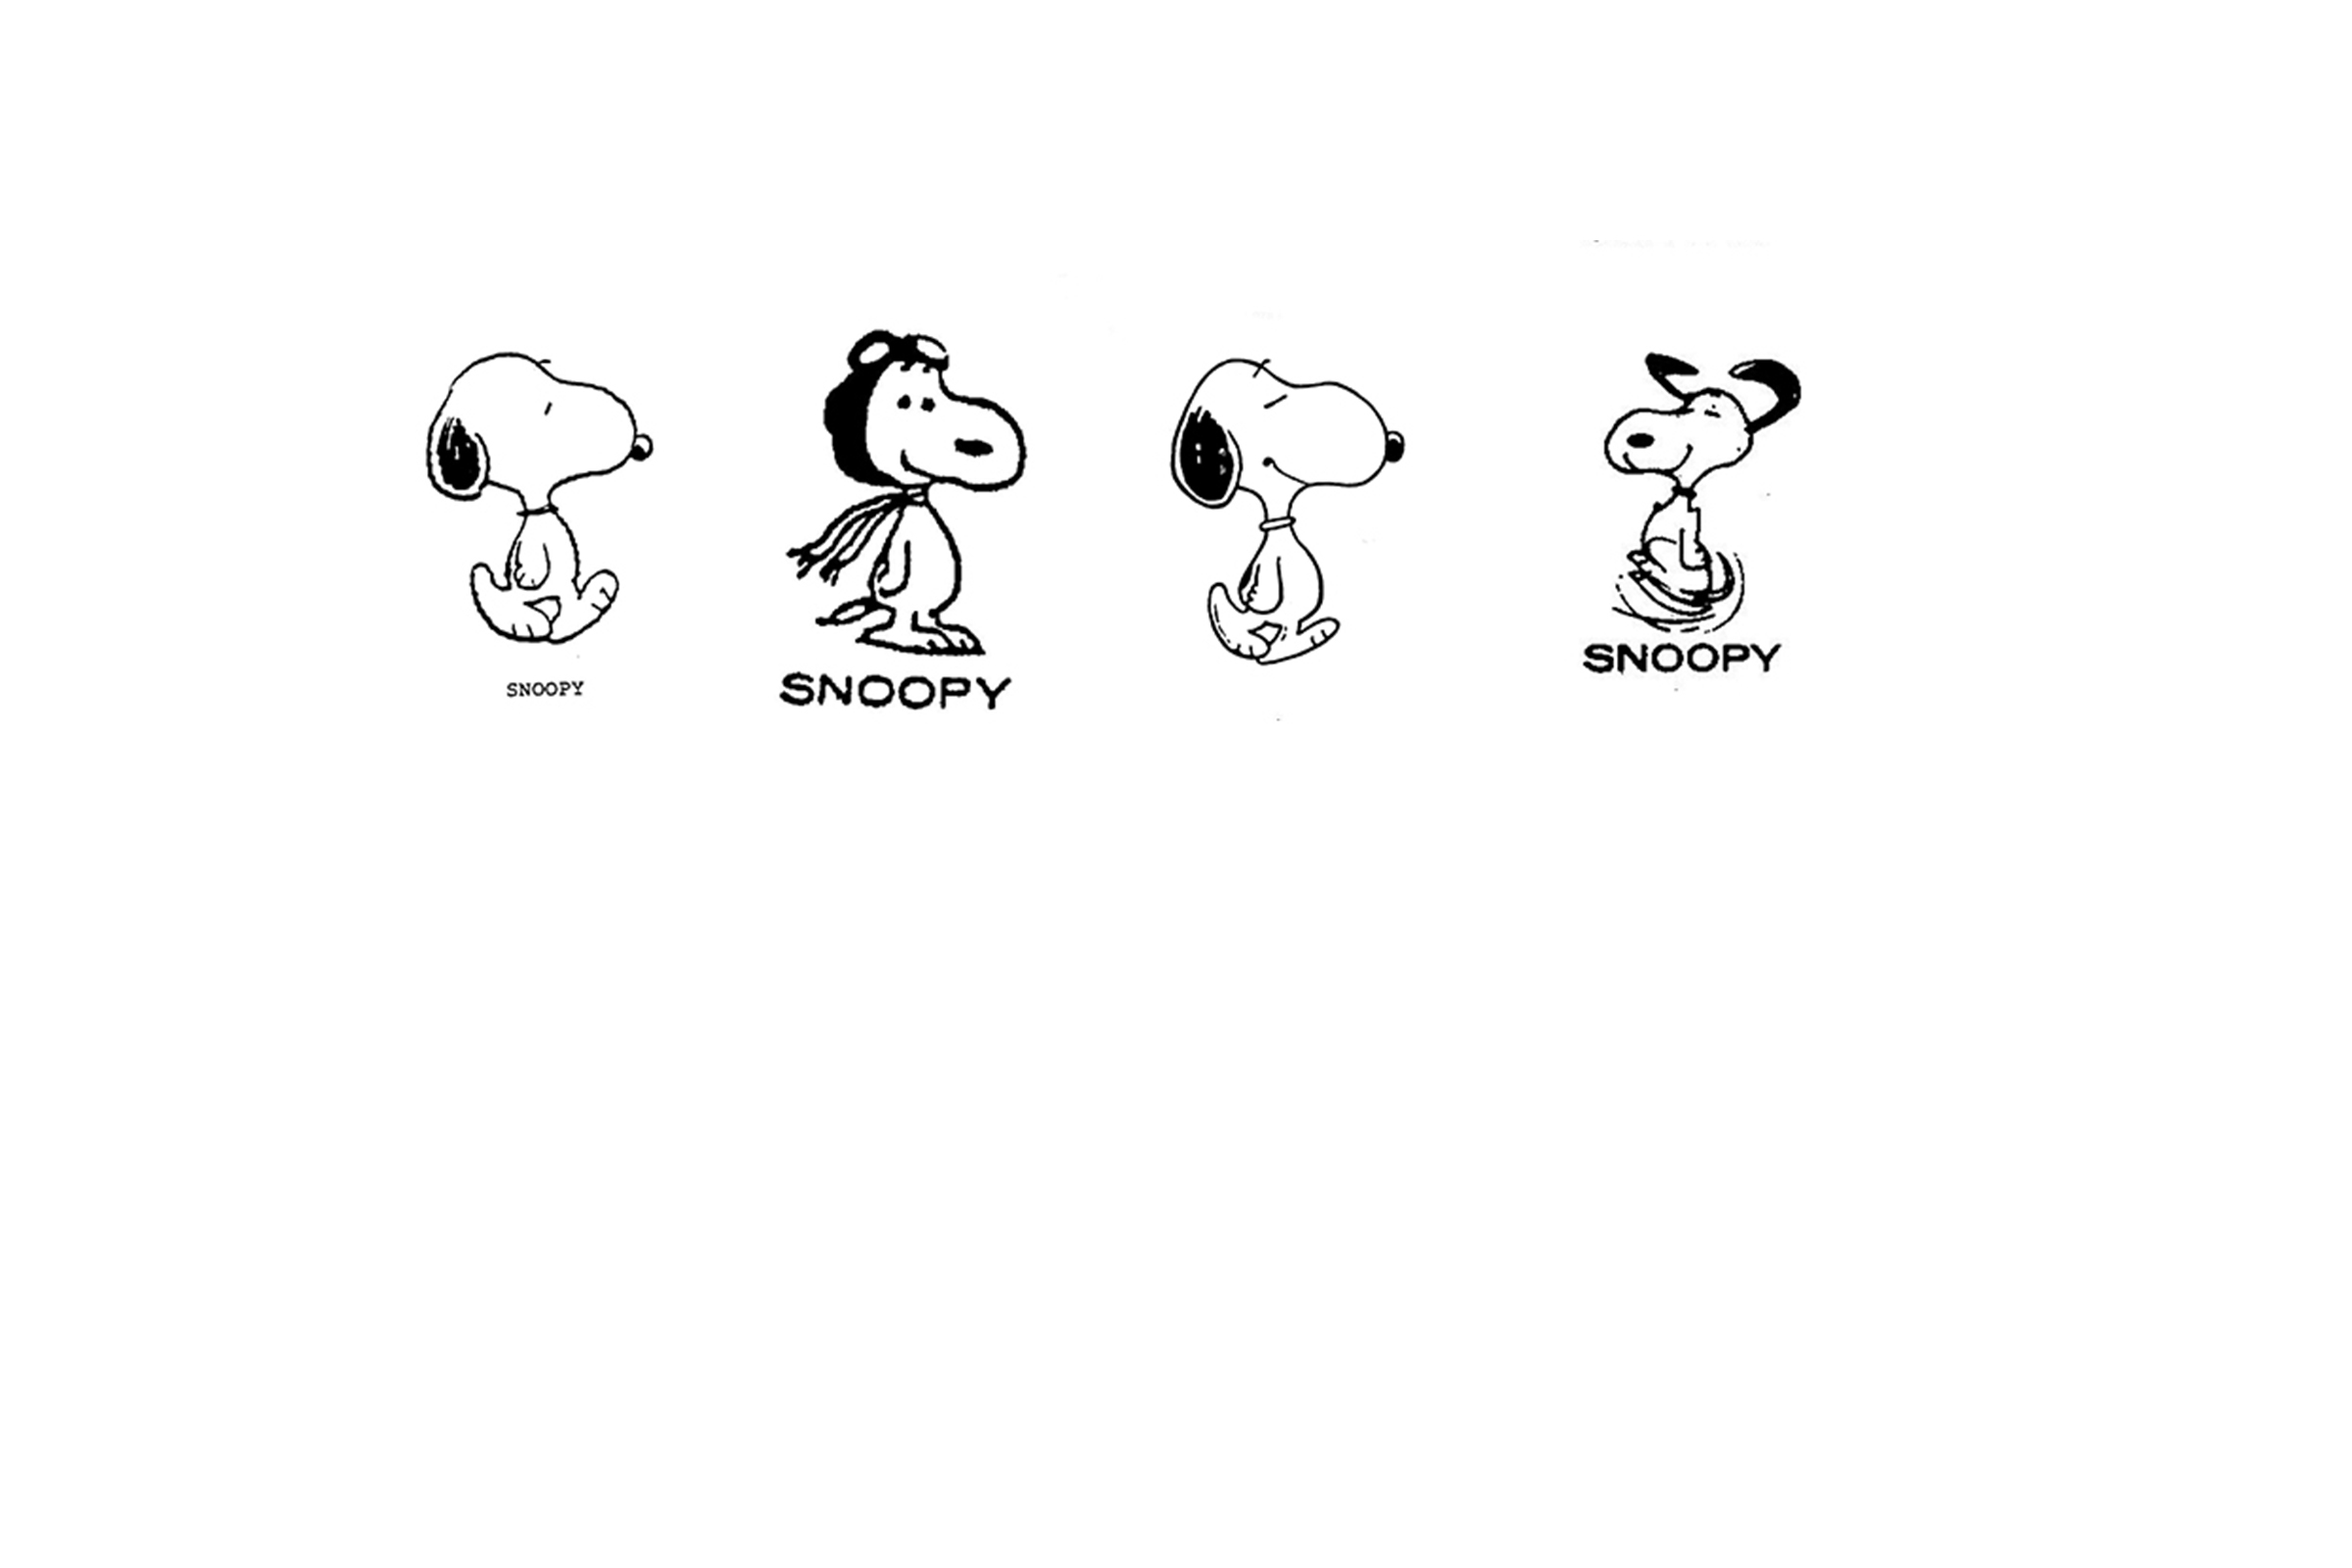 Snoopy trade marks